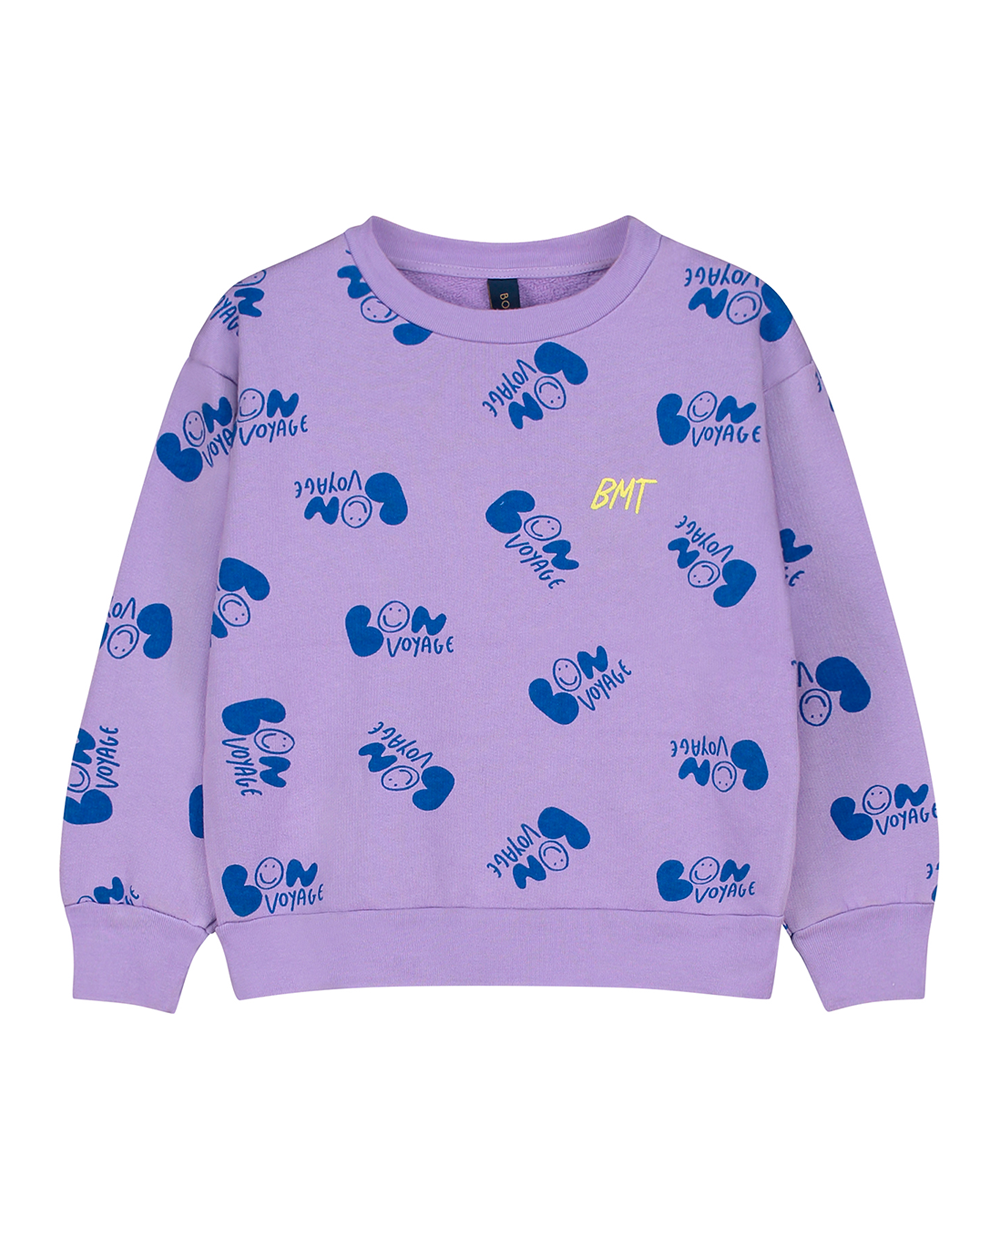 [BONMOT] Sweatshirt allover bon voyage lilac [4-5Y, 6-7Y, 8-9Y, 10-11Y]